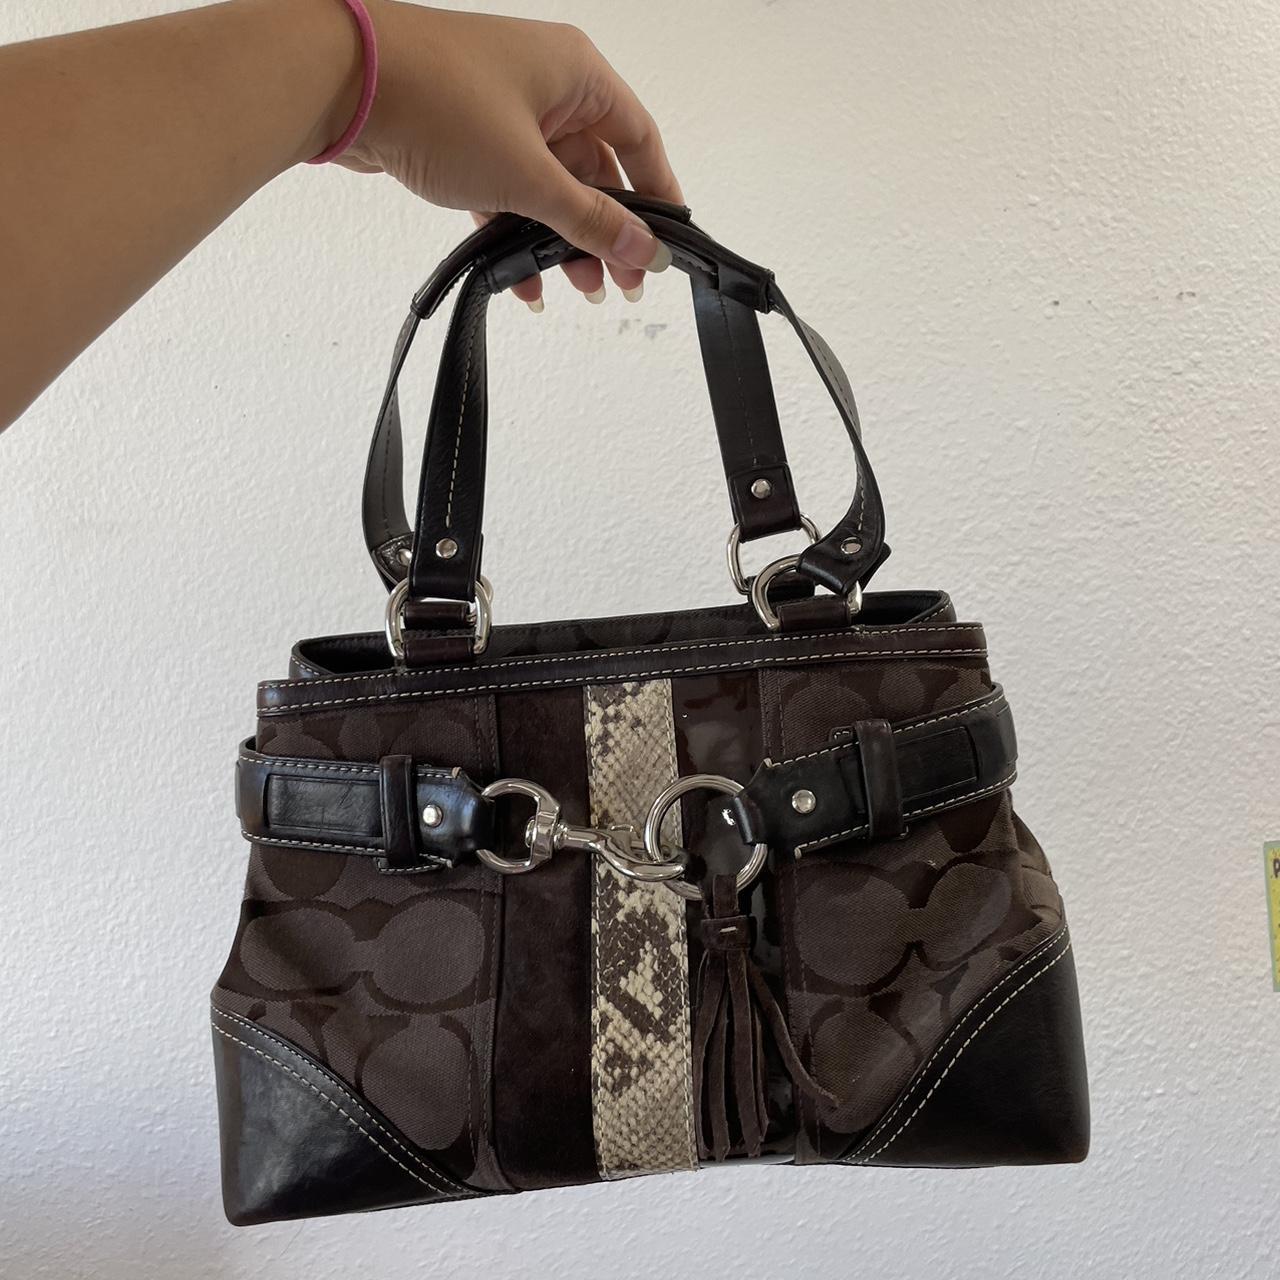 Coach - Brown Leather Large Purse Shoulder Bag Multi Pockets | eBay